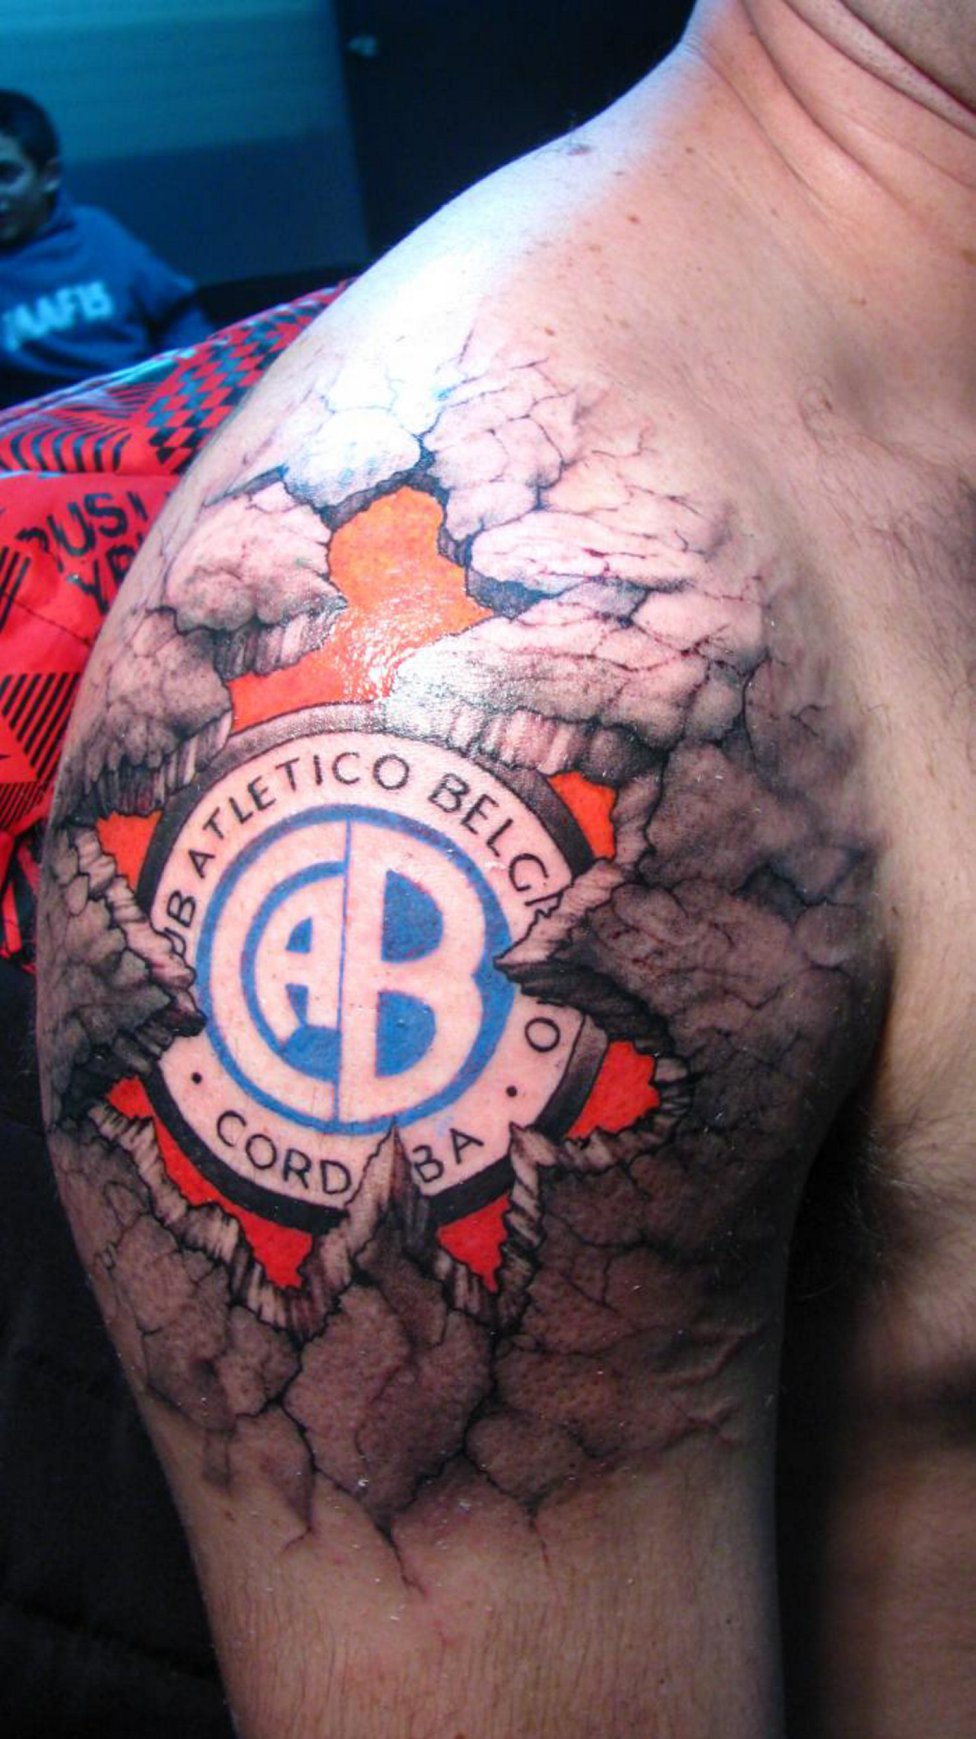 Tatuajes de escudos de fútbol que te sorprenderán - AS.com